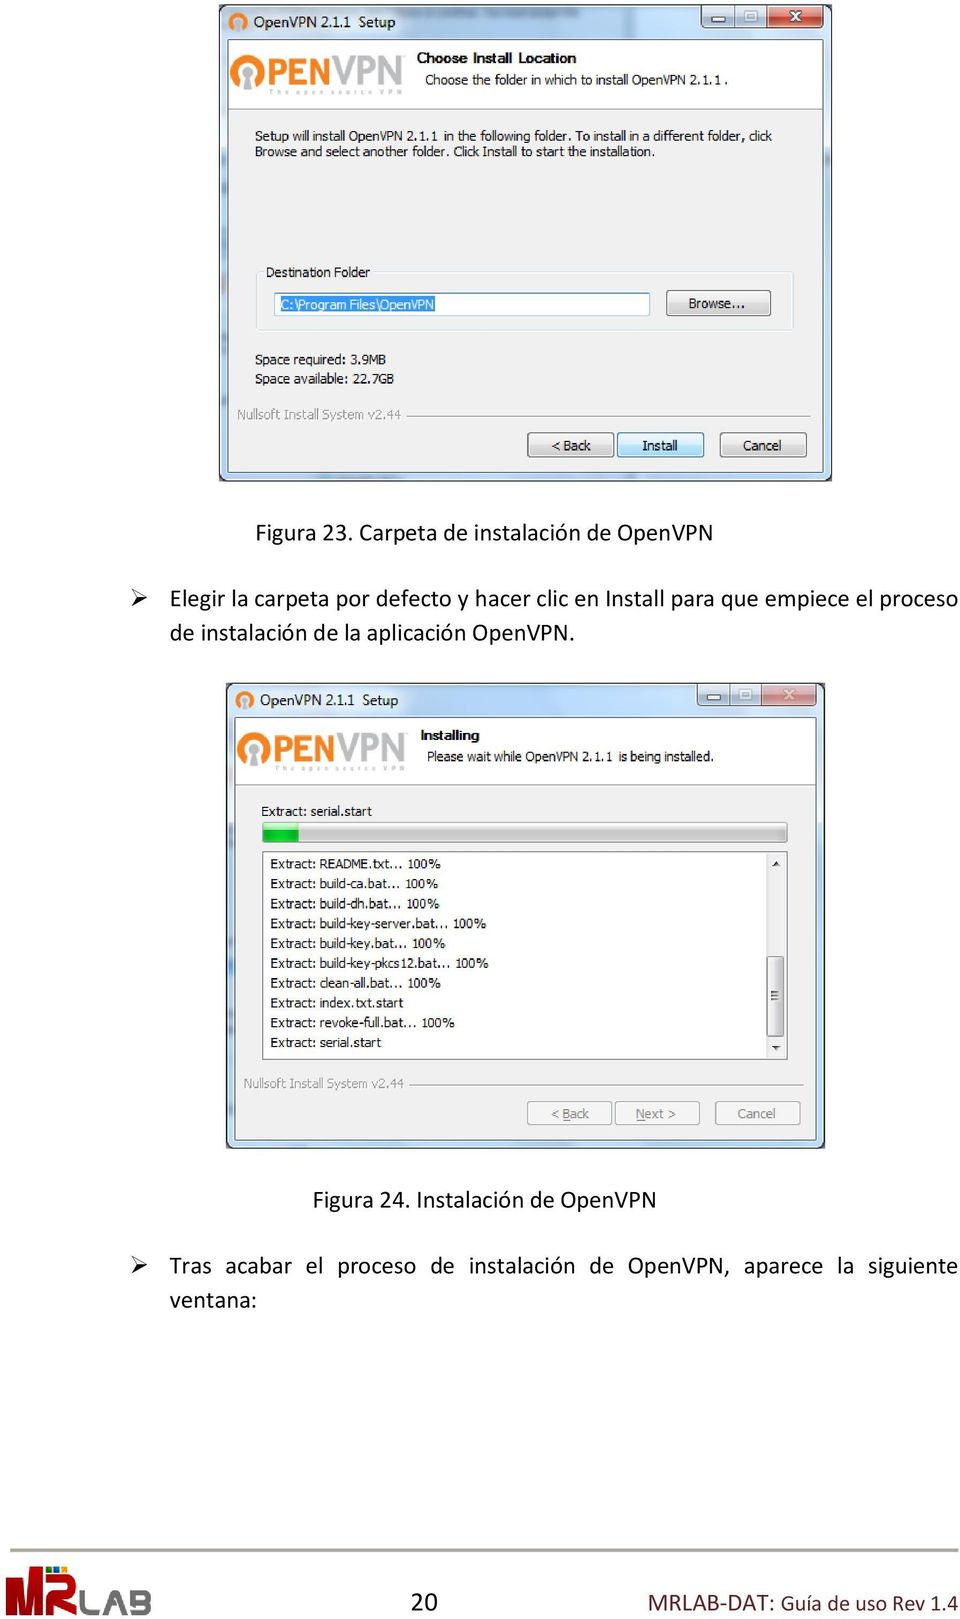 en Install para que empiece el proceso de instalación de la aplicación OpenVPN.